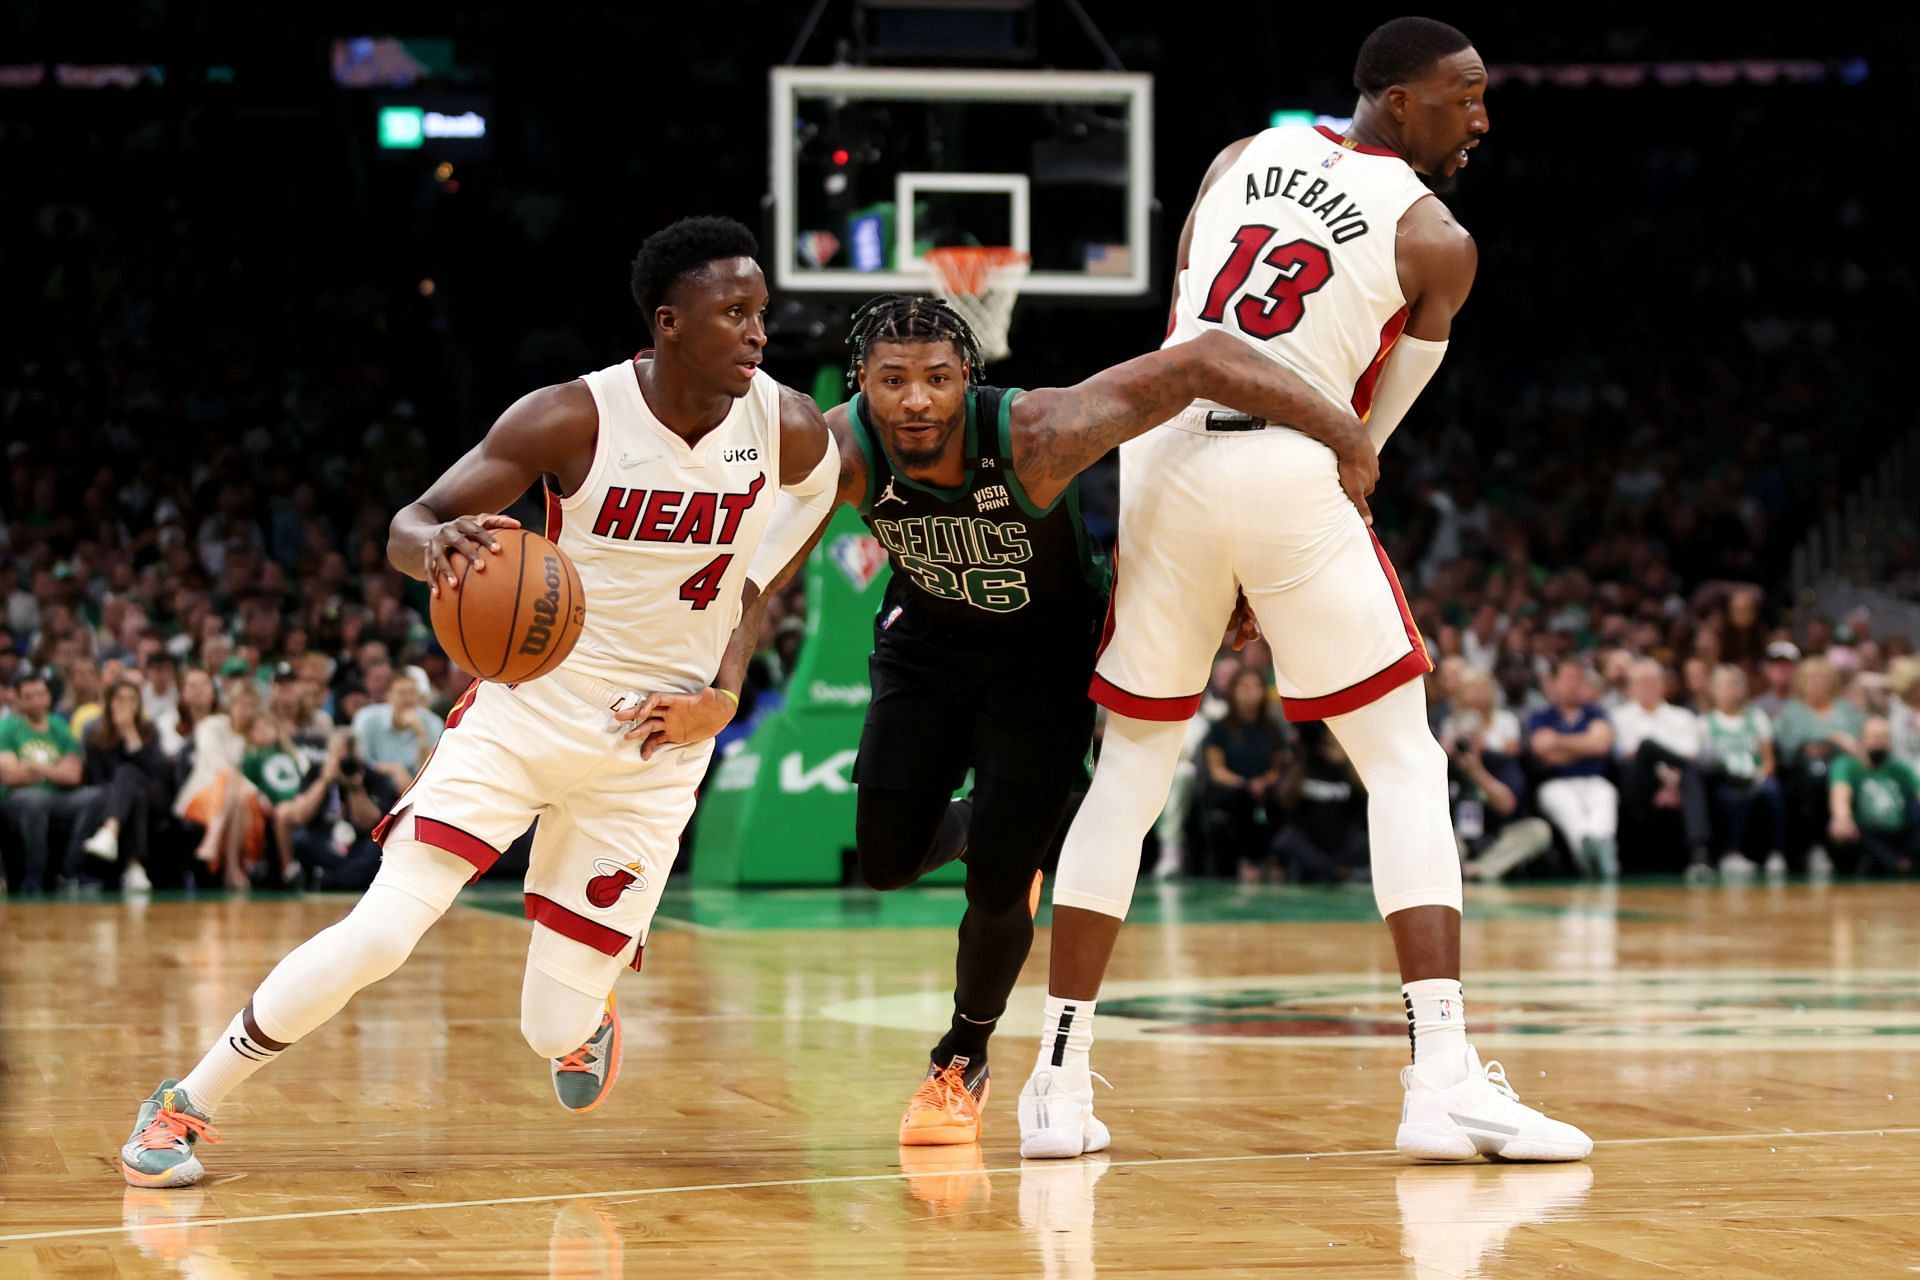 Miami Heat vs. Boston Celtics, Game 6